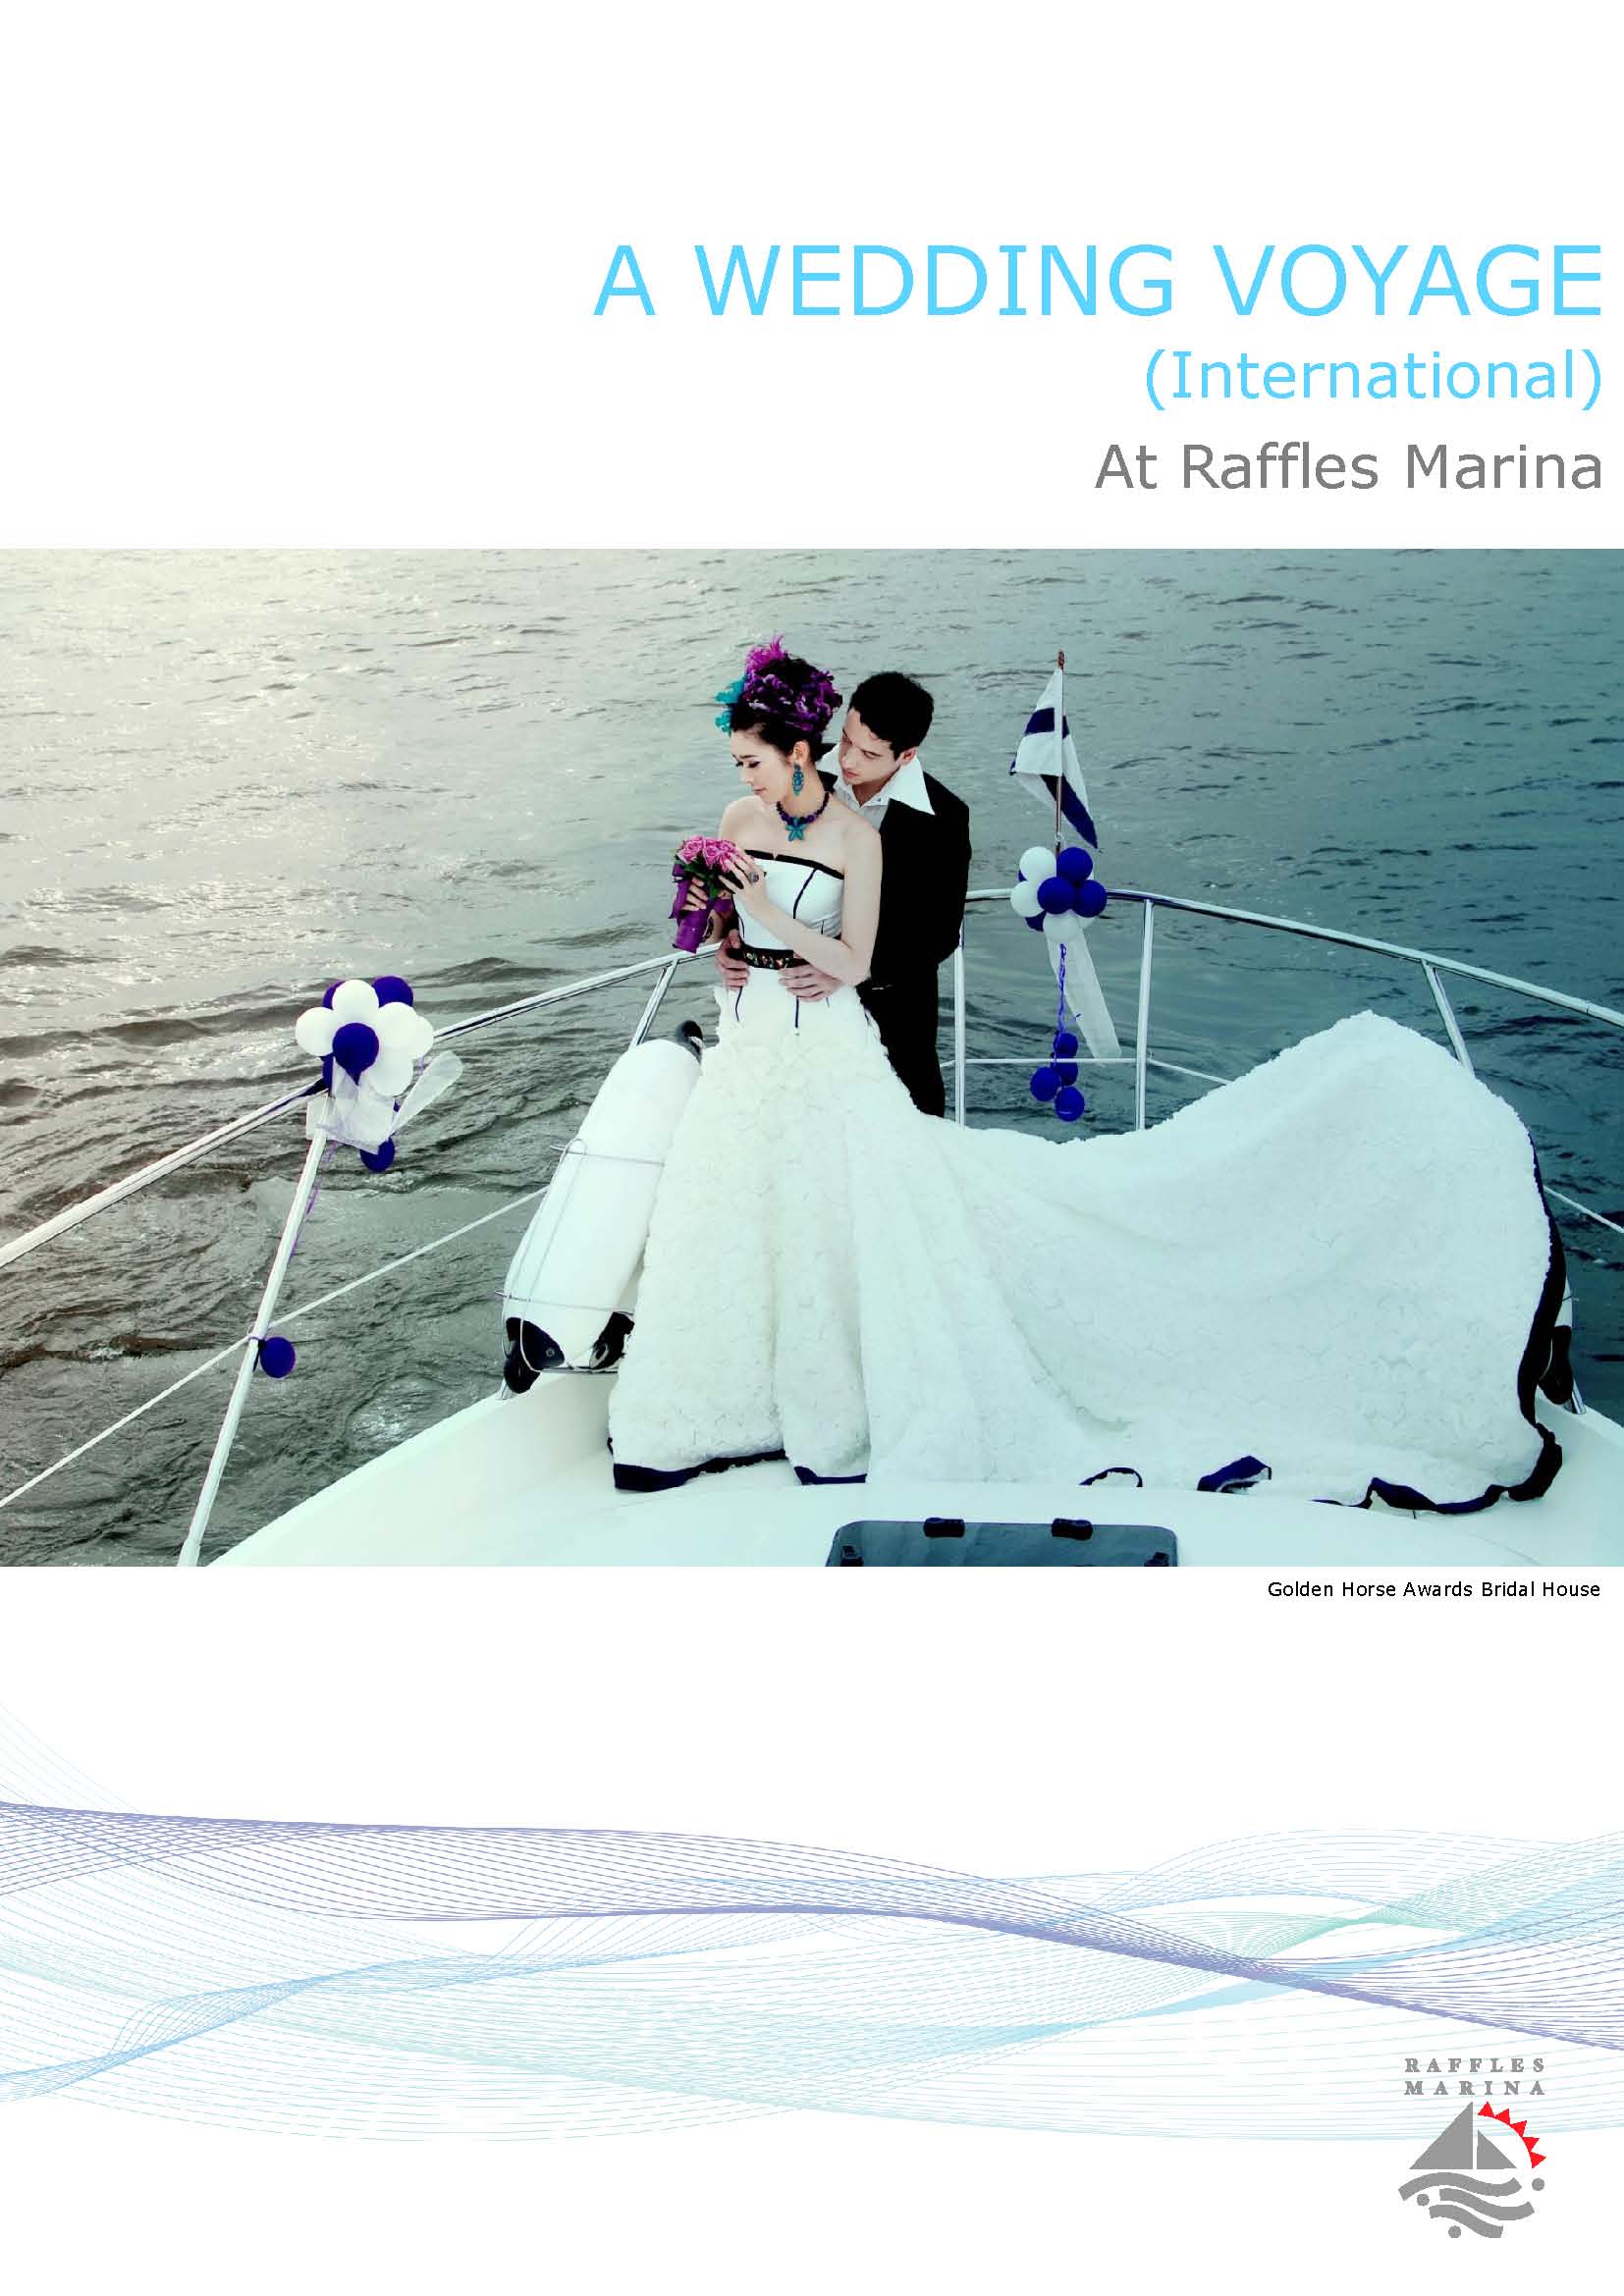 Raffles Marina